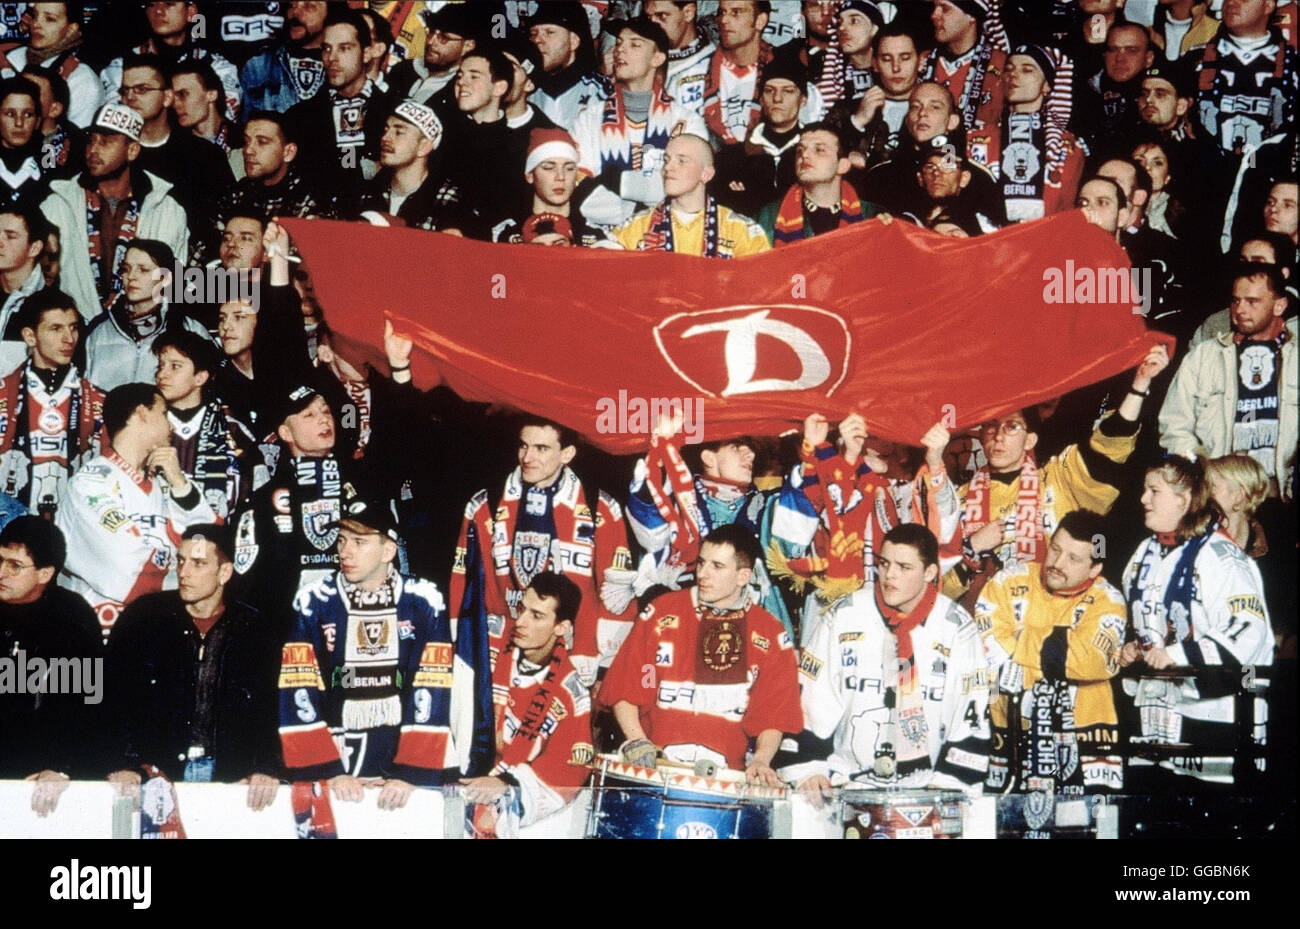 HEIMSPIEL - UND DU FÜHLST DEN OSTEN / Deutschland 1999 / Pepe Danquart Es klingt wie ein Märchen: Der Ostberliner Eishockeyclub Dynamo, in den Wendezeiten schwer erschüttert und schon fast aufgegeben, spielt als 'Die Eisbären' inzwischen in der Bundesliga. Die Heimspiele sind fröhliche Happenings, bei denen sich die gekränkten ostdeutschen Fans den Frust von den Seelen singen und tanzen. In den Umbrüchen der vergangenen Jahre wurde der Club zum Symbol ostdeutschen Selbstbewußtseins ... Bild: EHC - Fangemeinde Regie: Pepe Danquart Stock Photo